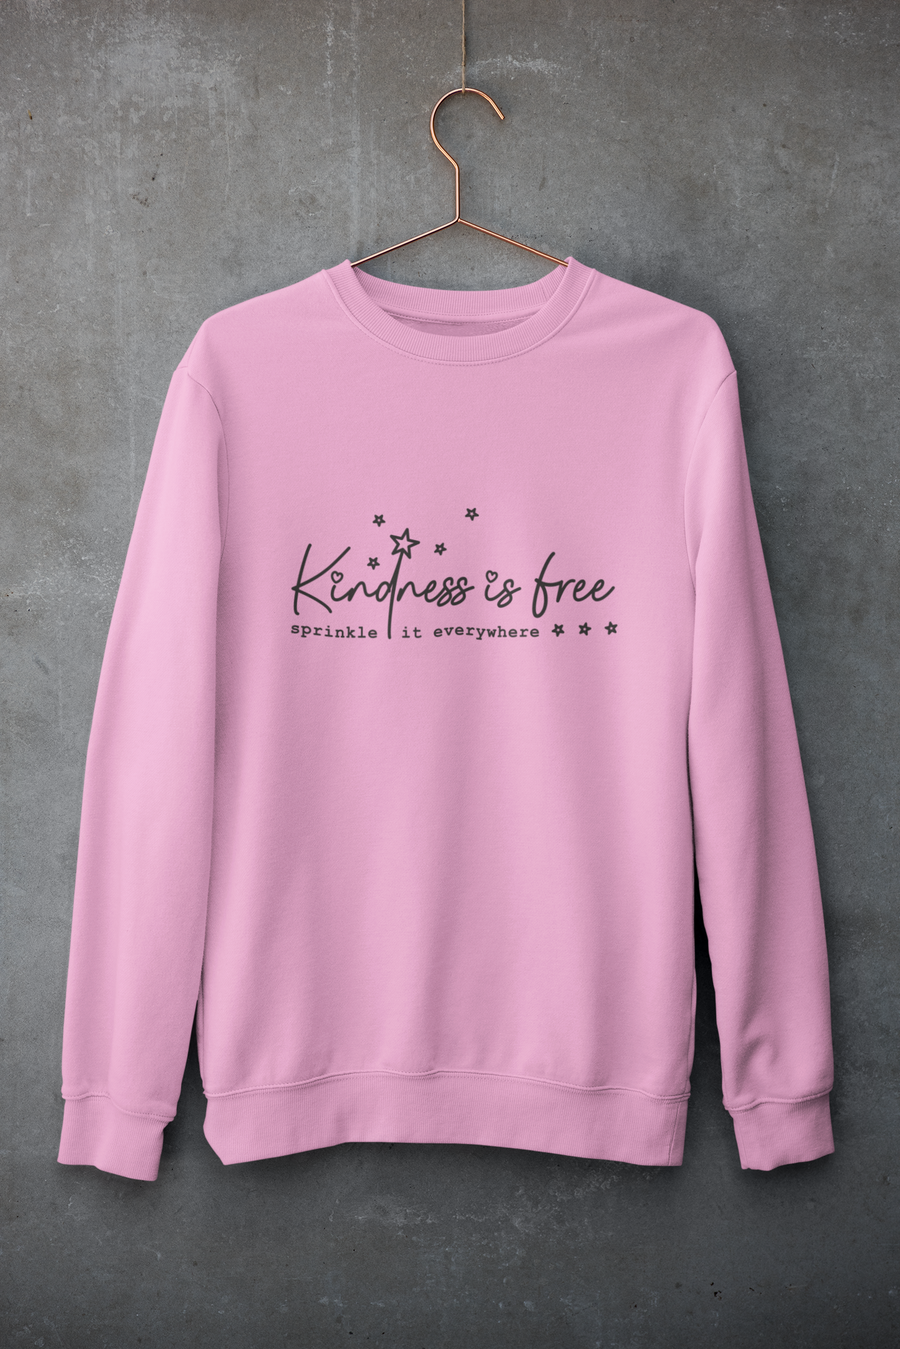 Kindness is Free Adult Crewneck Sweatshirt